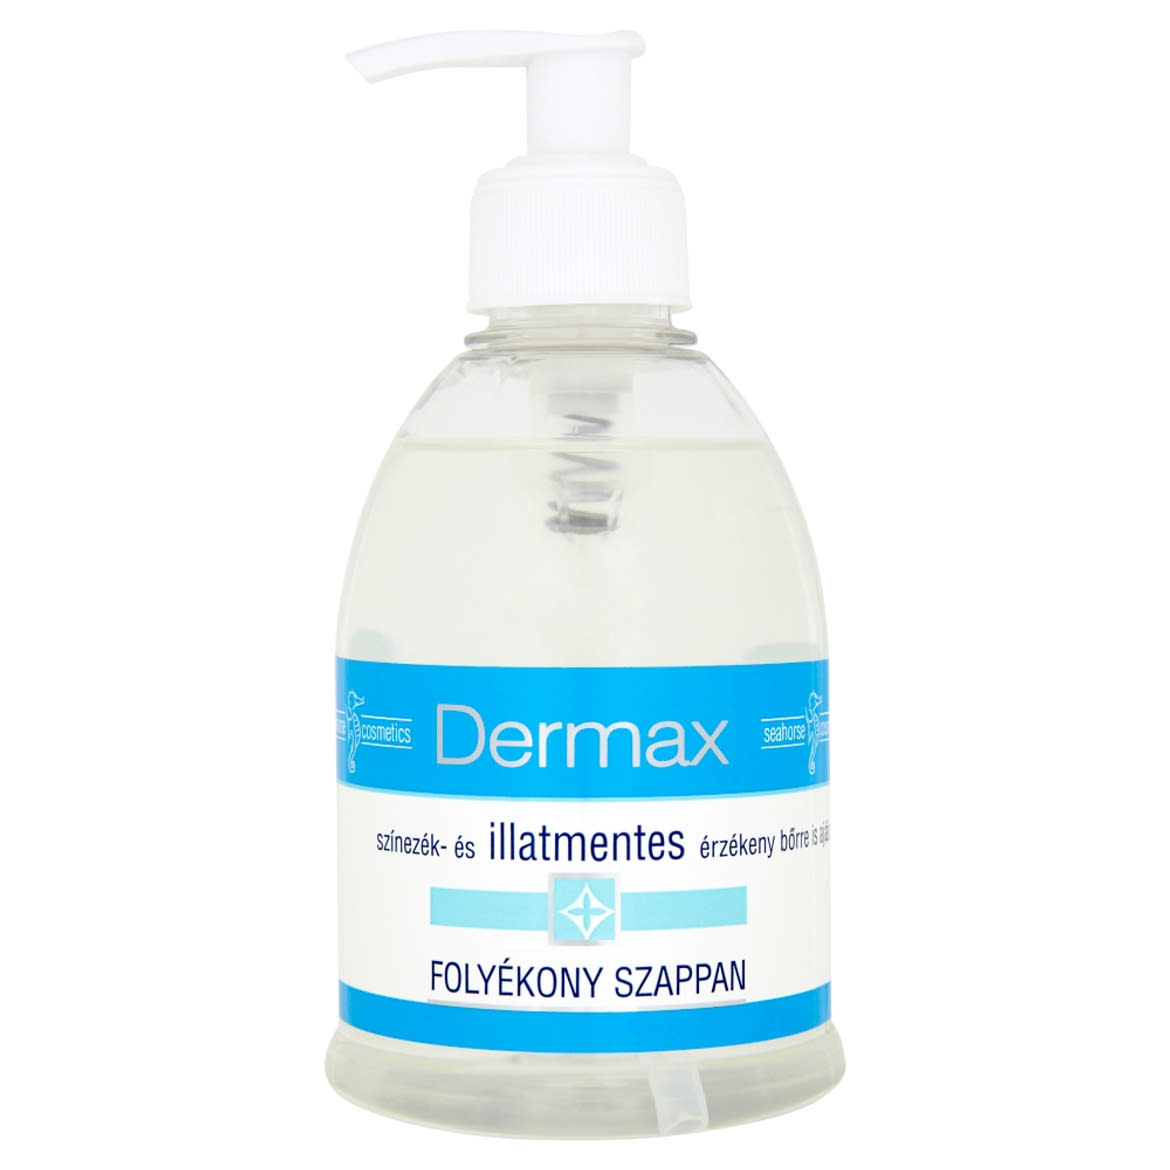 Dermax színezék- és illatmentes folyékony szappan érzékeny bőrre 300 ml